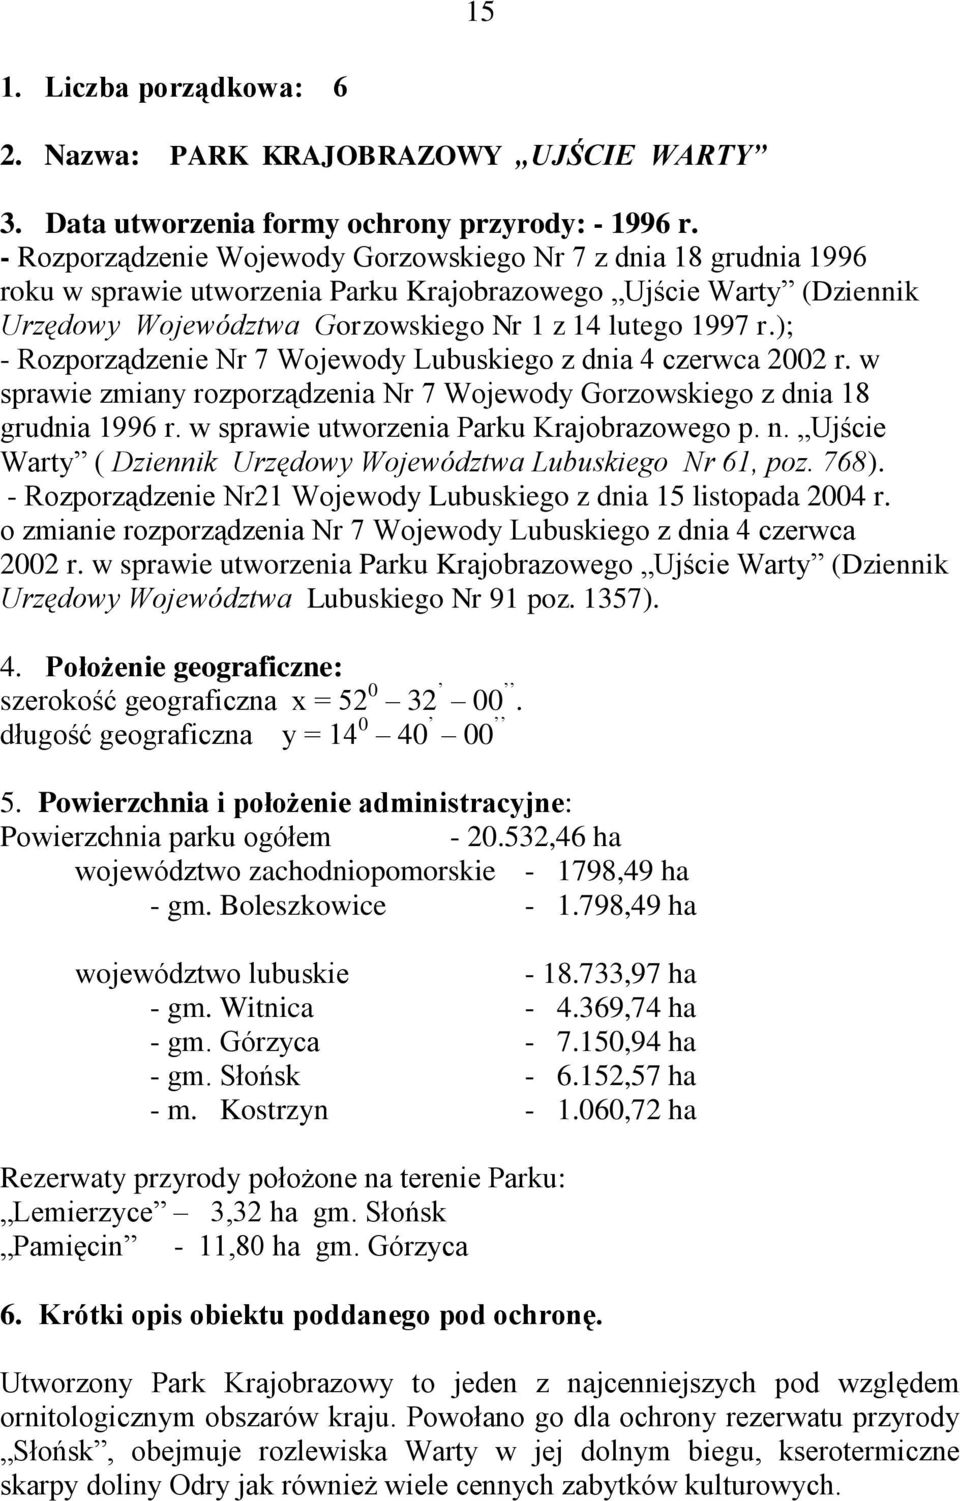 ); - Rozporządzenie Nr 7 Wojewody Lubuskiego z dnia 4 czerwca 2002 r. w sprawie zmiany rozporządzenia Nr 7 Wojewody Gorzowskiego z dnia 18 grudnia 1996 r. w sprawie utworzenia Parku Krajobrazowego p.